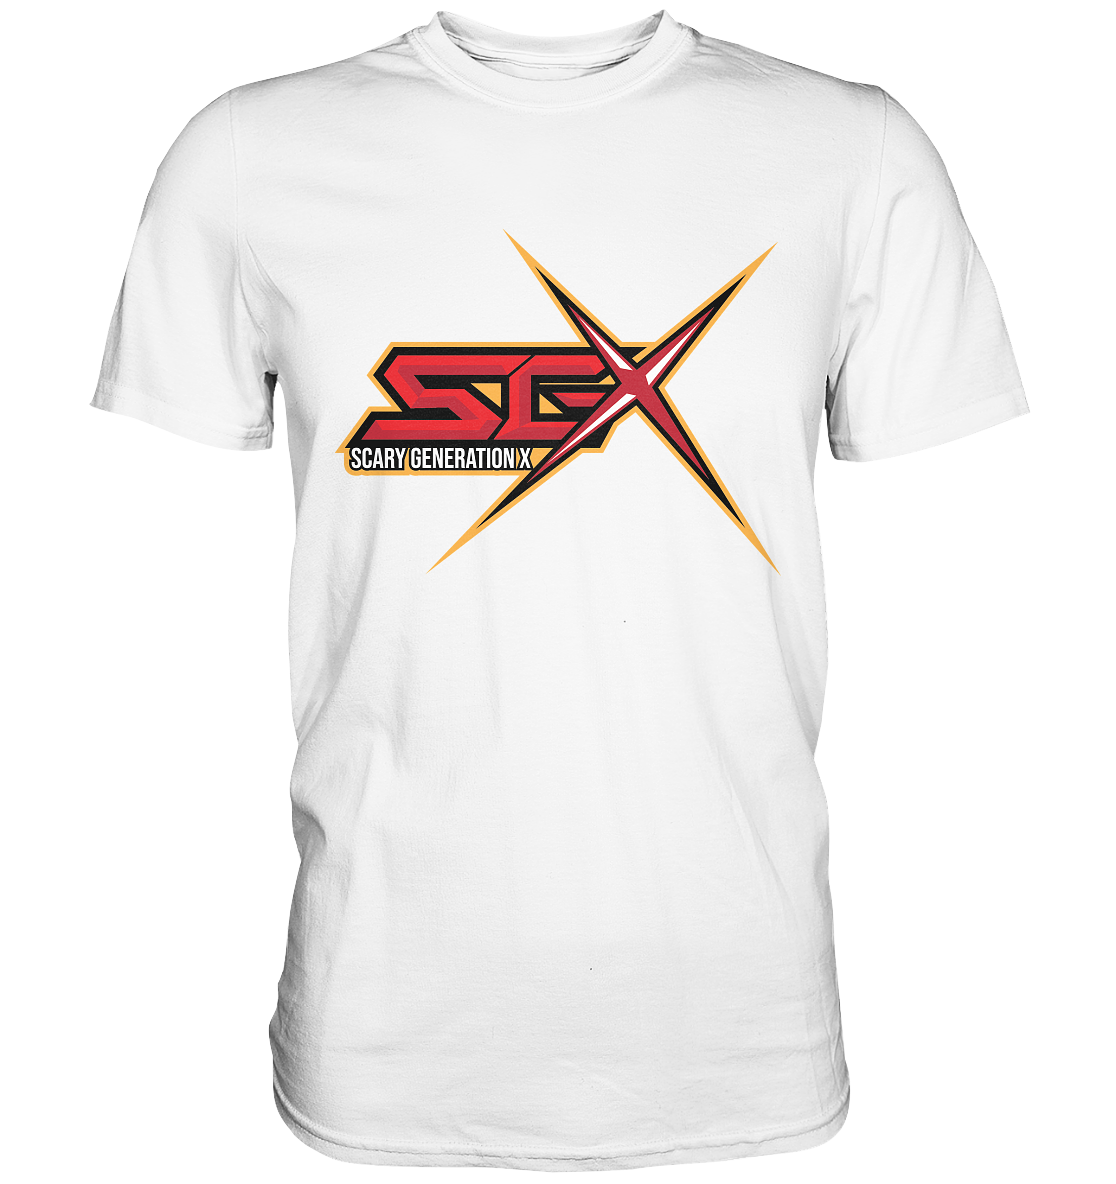 SCARY GENERATION X - Basic Shirt